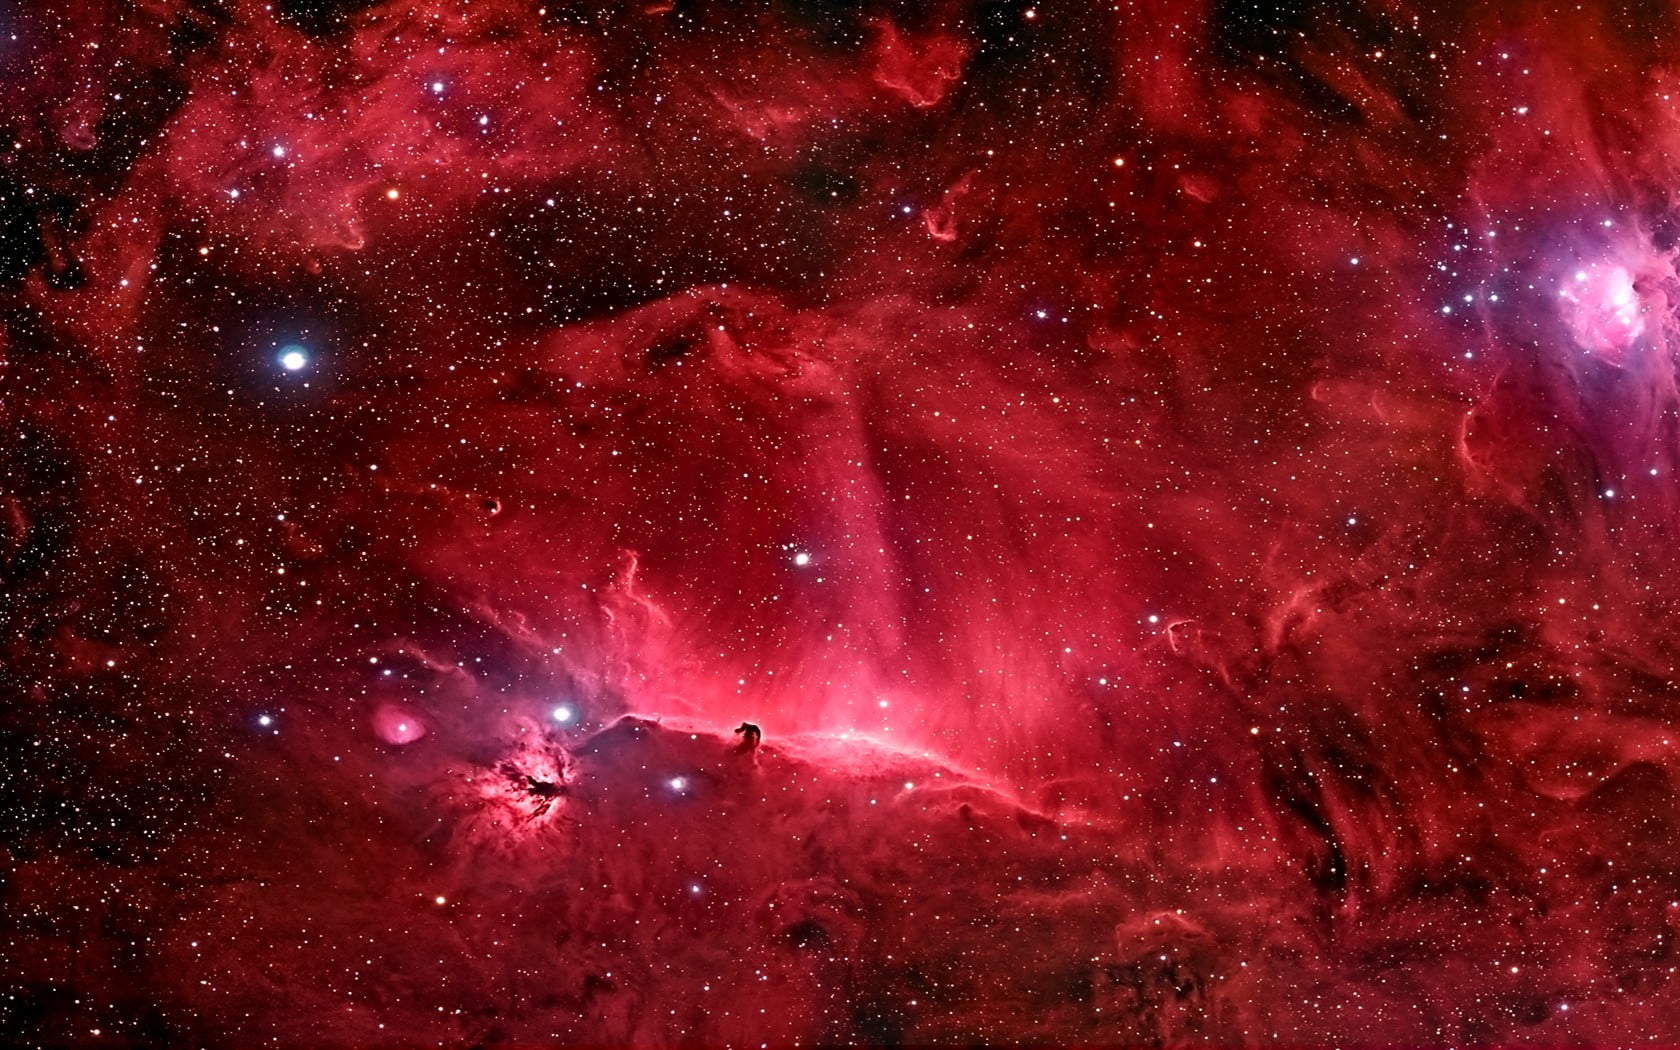 Bạn có tò mò về thế giới ngoài kia? Hãy ngắm nhìn những minh họa thiên hà đỏ, không gian rộng lớn cùng tinh vân độc đáo, huyền bí. Tinh vân Đầu Ngựa HD sẽ đưa bạn đến một không gian thần kỳ và đầy sáng tạo.